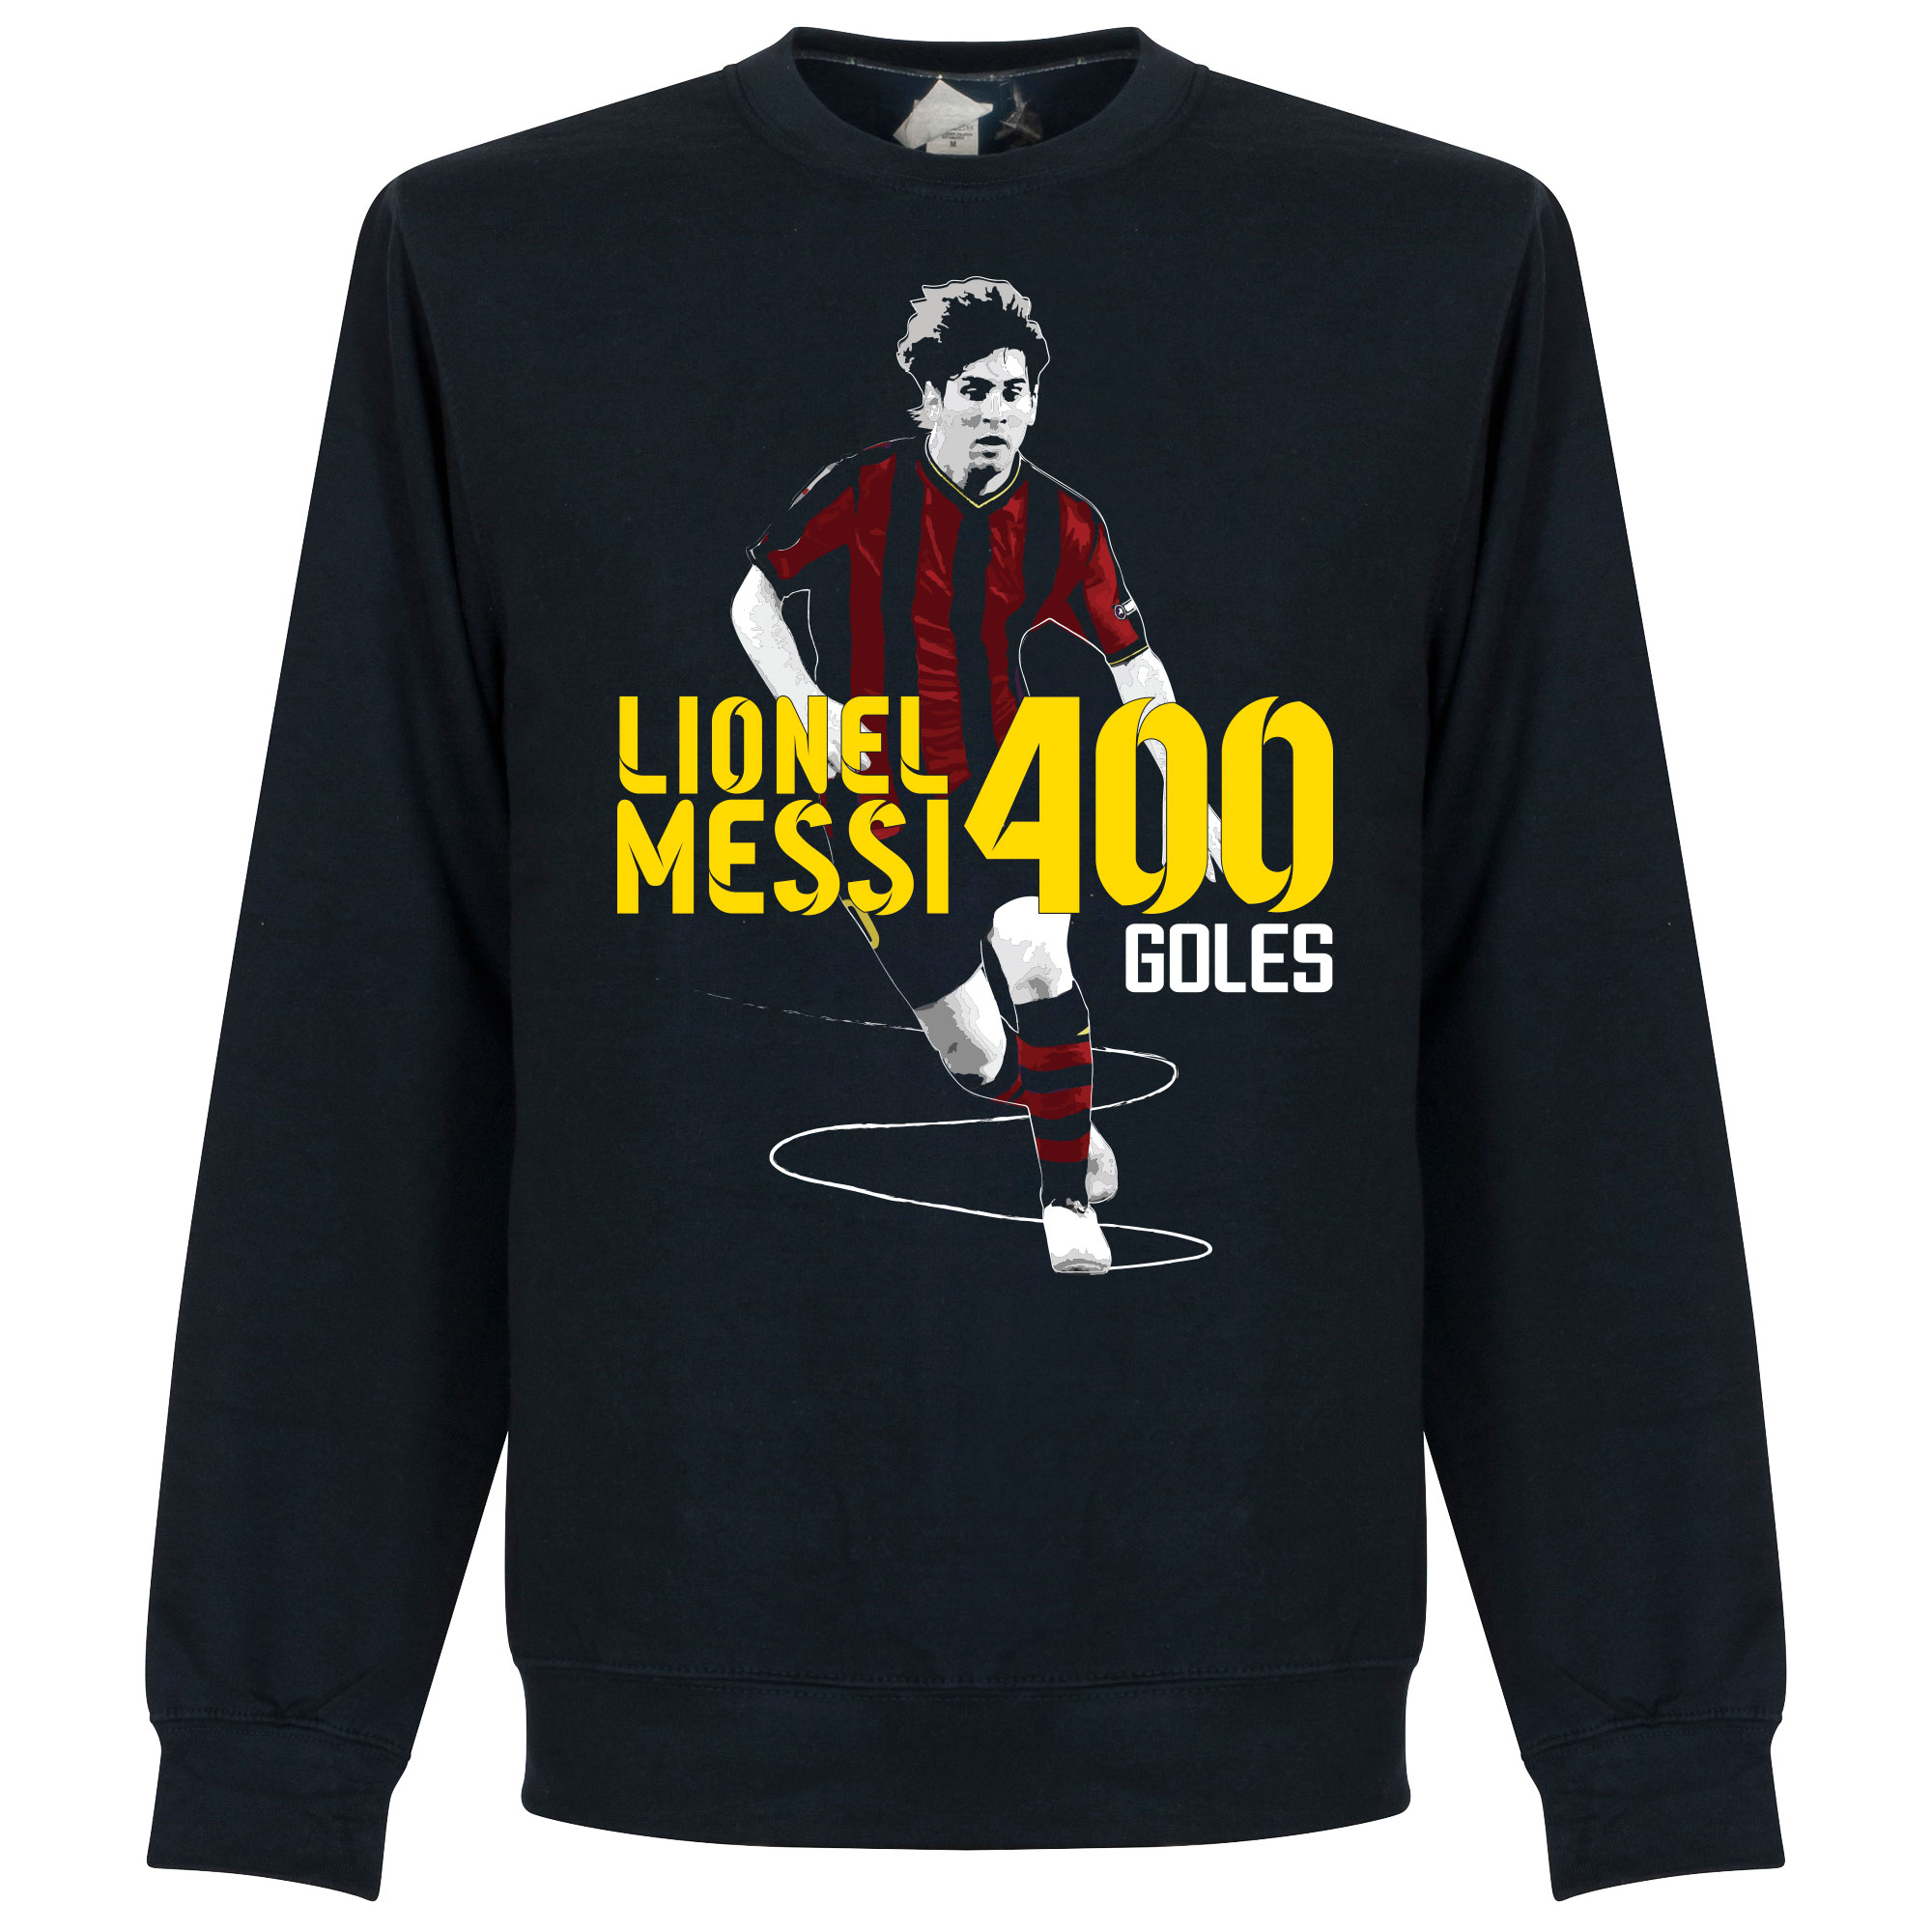 Messi 400 Goals Crew Neck Sweater - S